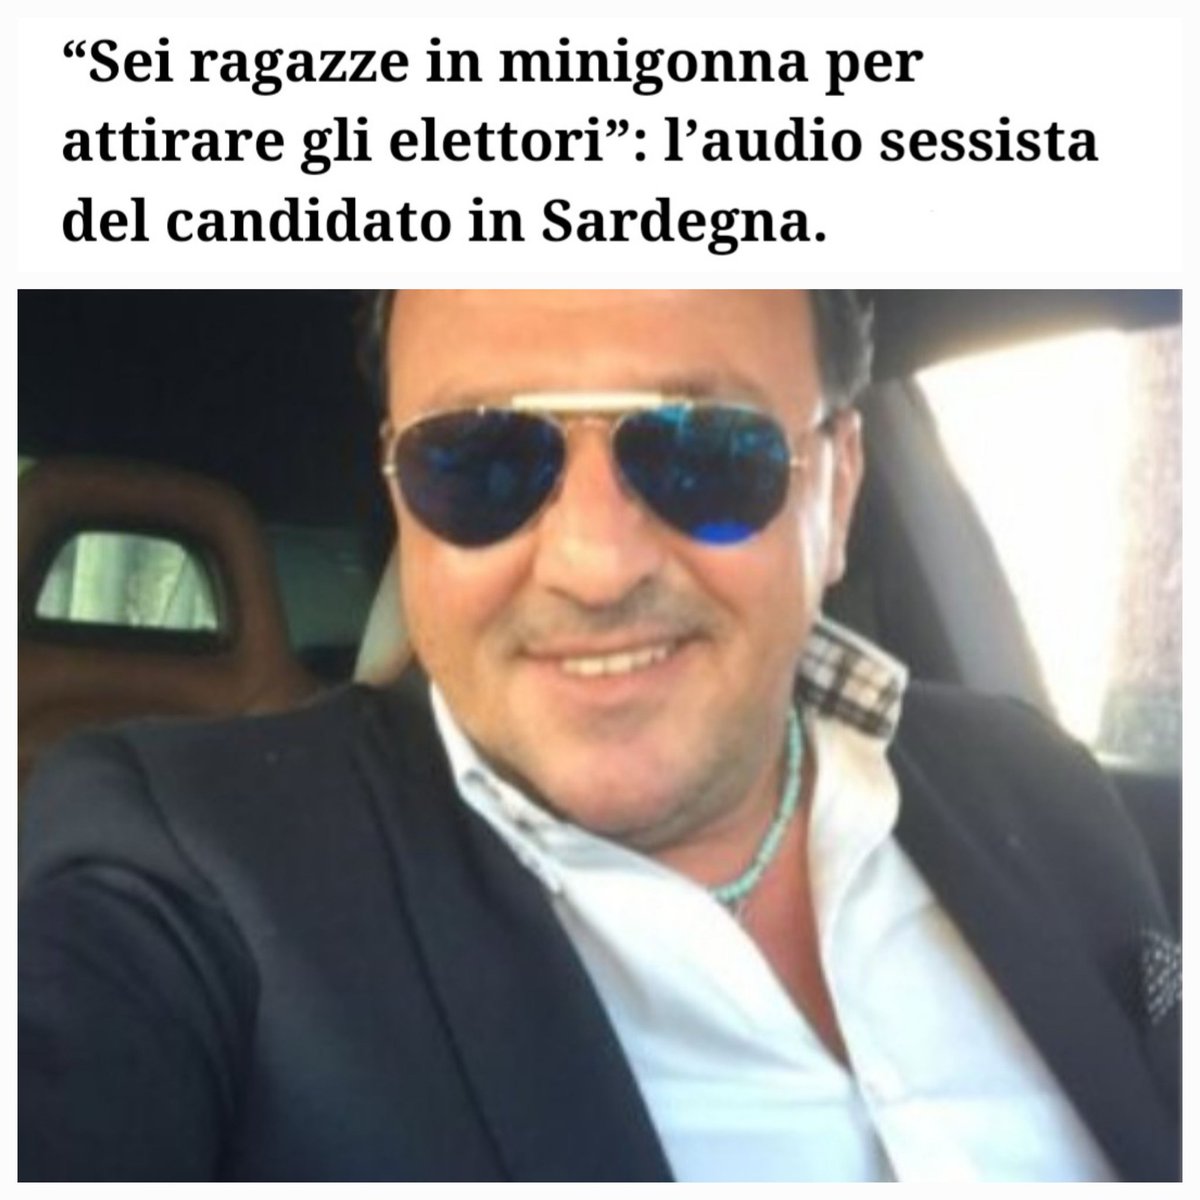 #regionaliSardegna 

Il candidato di destra Pietro Pinna punta a vincere le elezioni grazie ad un programma ben preciso 

#LaPeggiore_DESTRA_diSempre